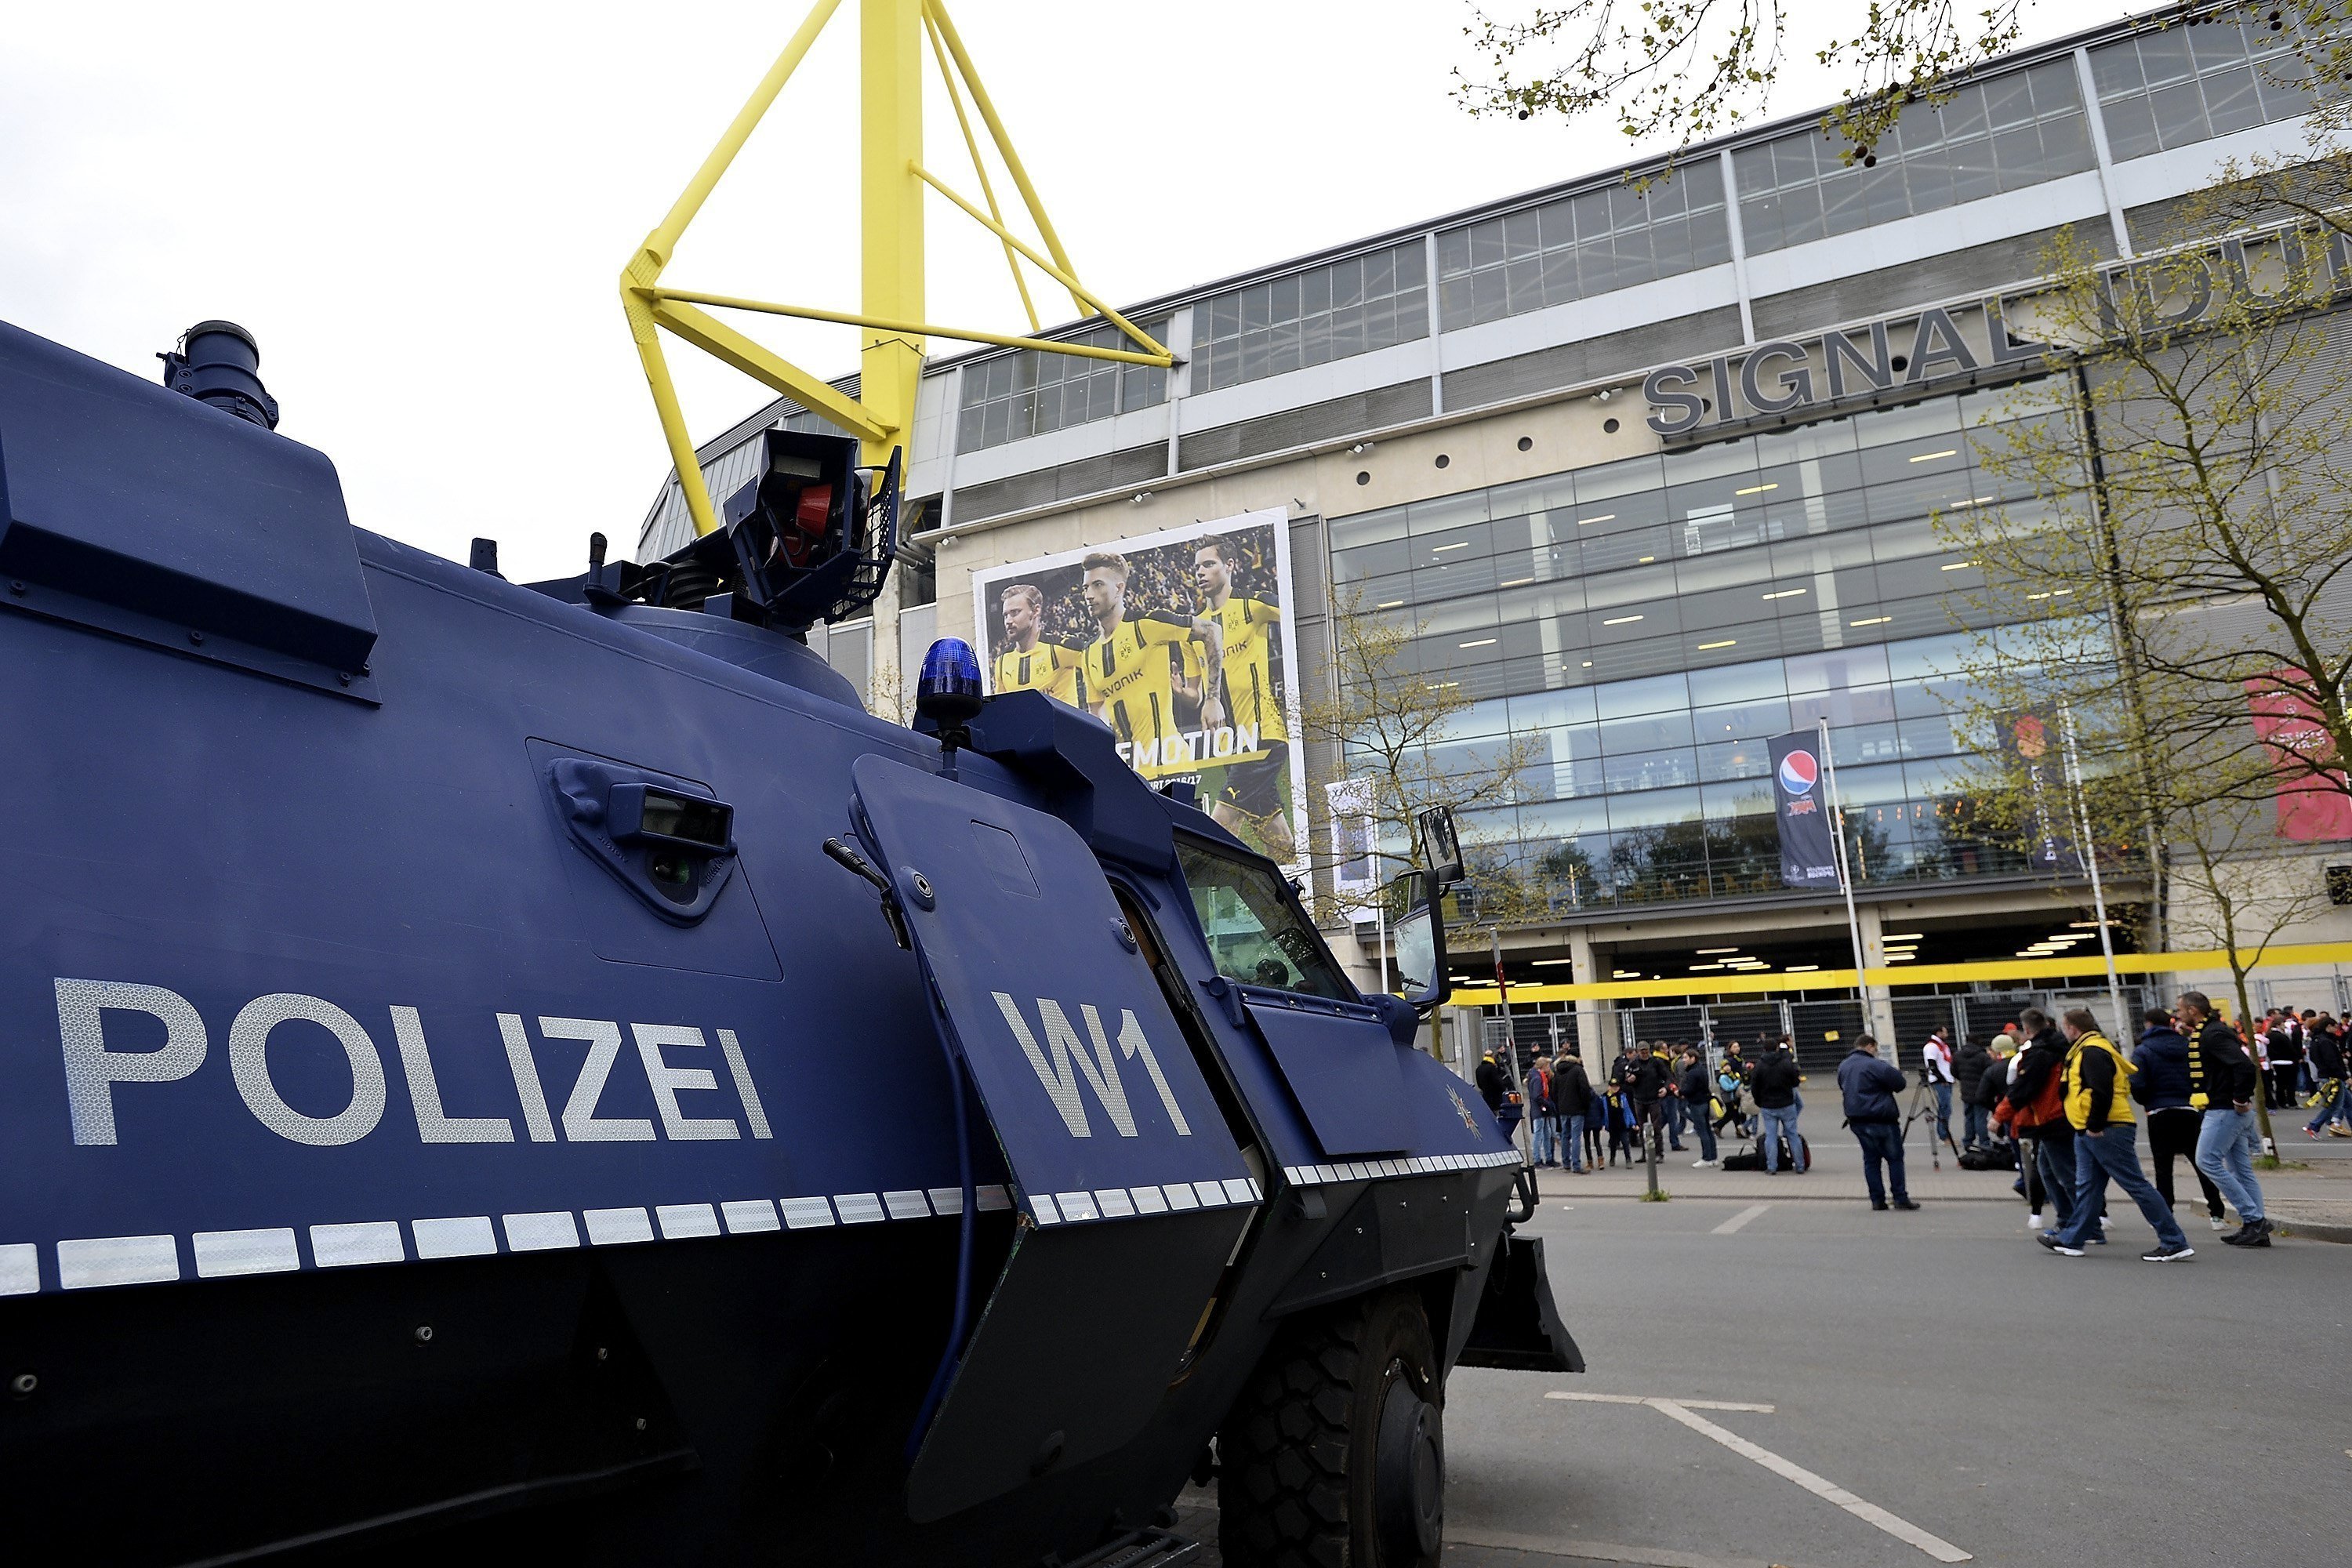 Un grup d’extrema dreta s’atribueix ara l’atac contra l’autobús del Dortmund